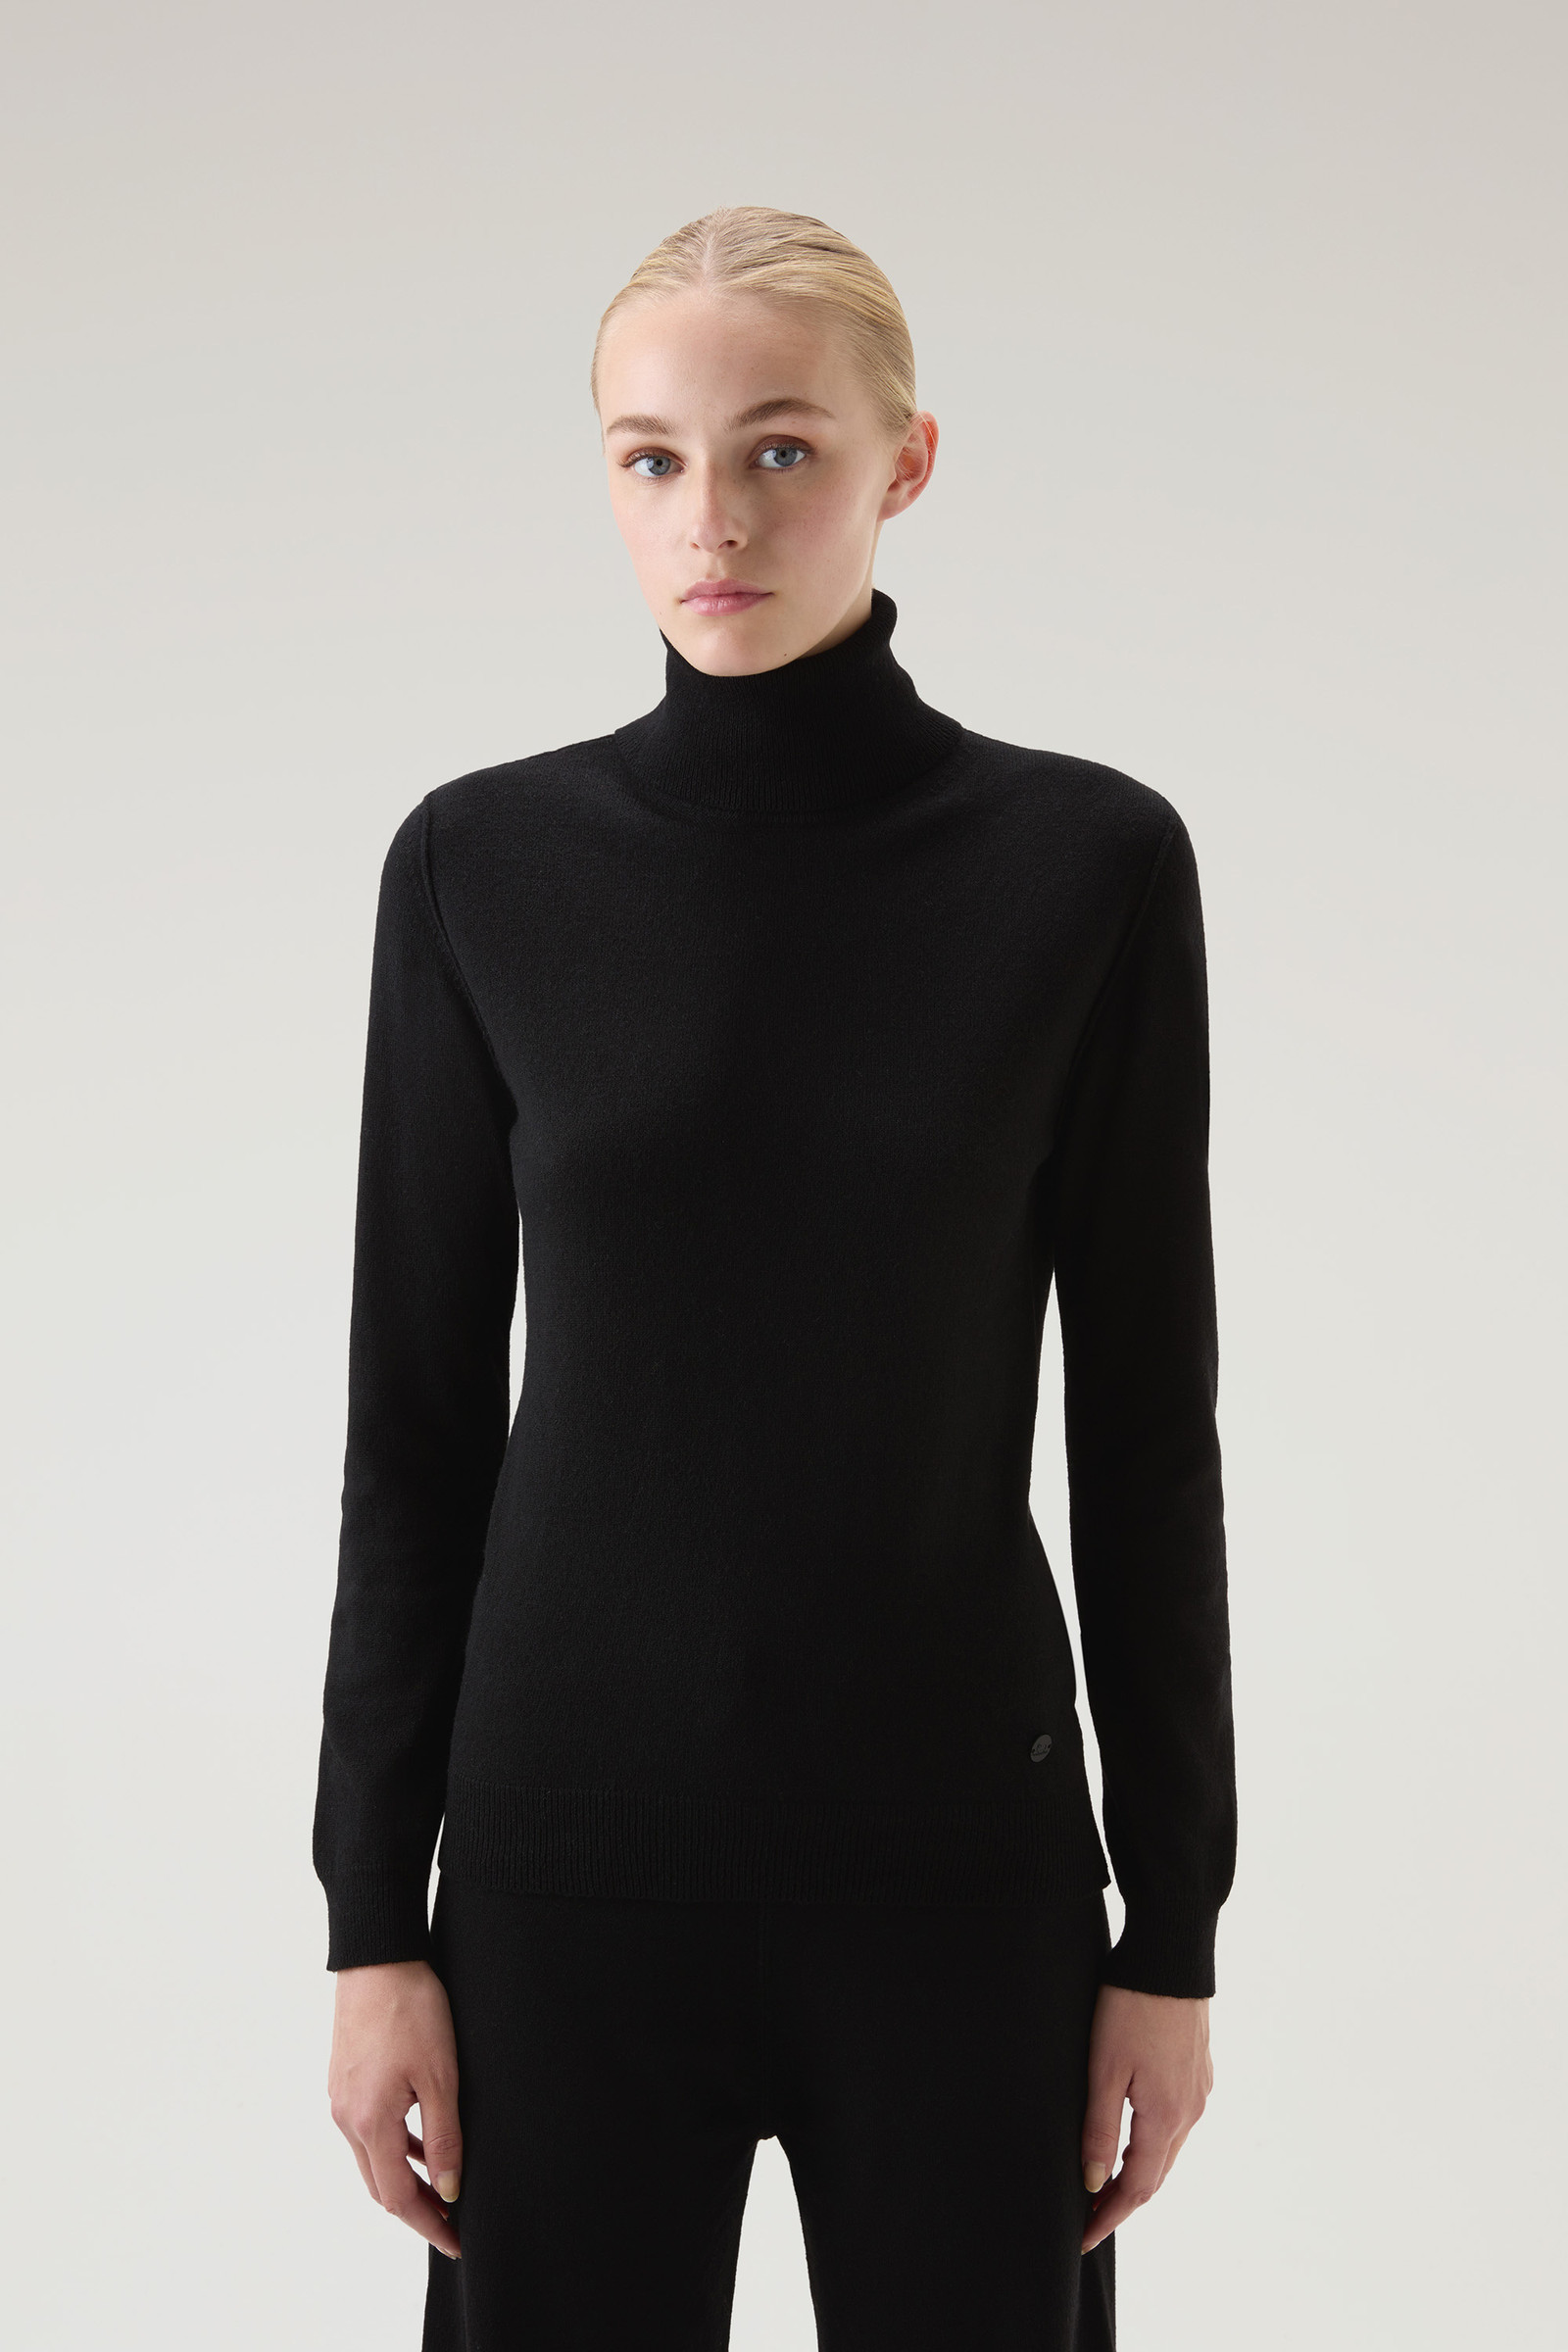 Women's Turtleneck Sweater in Wool Blend Black | Woolrich USA